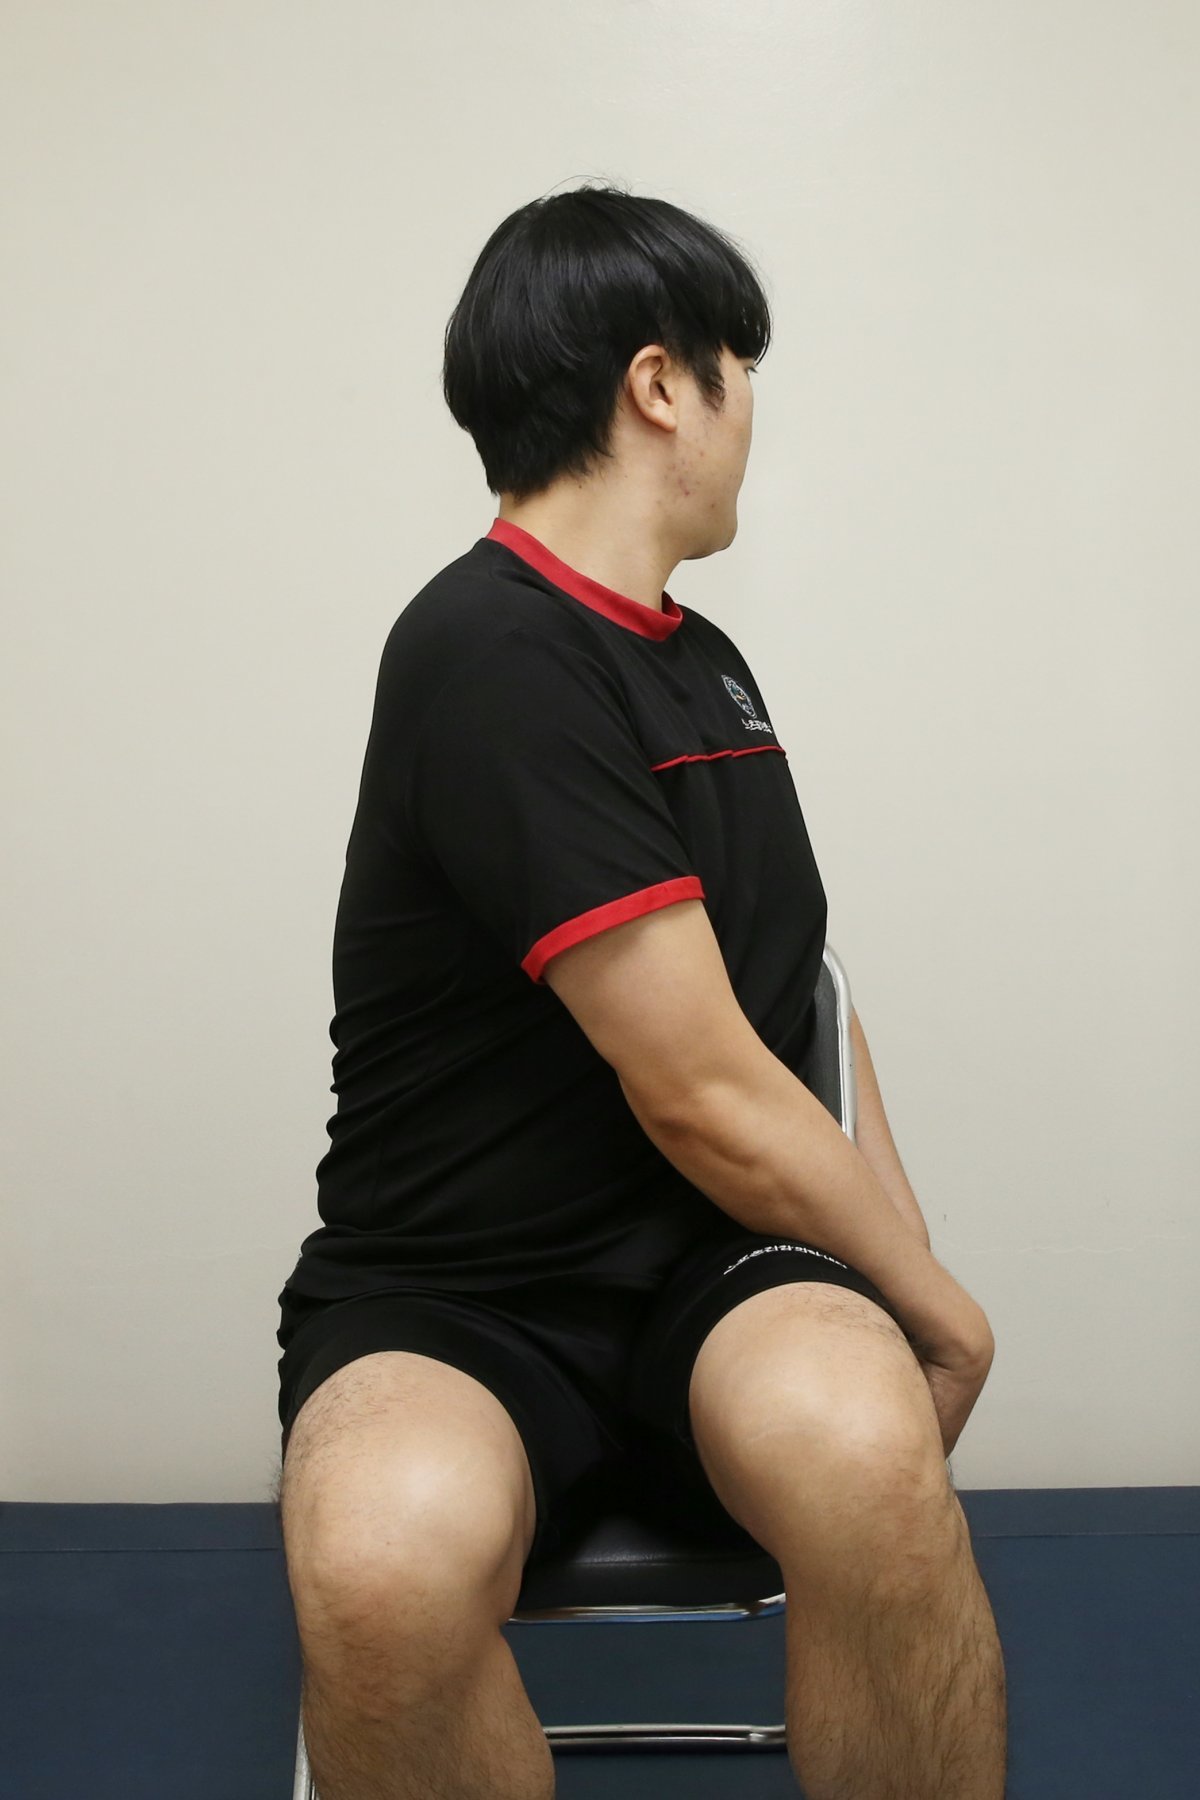 ⑤ 몸통 회전 운동=의자에 앉아 상체를 양쪽으로 회전시킨다.